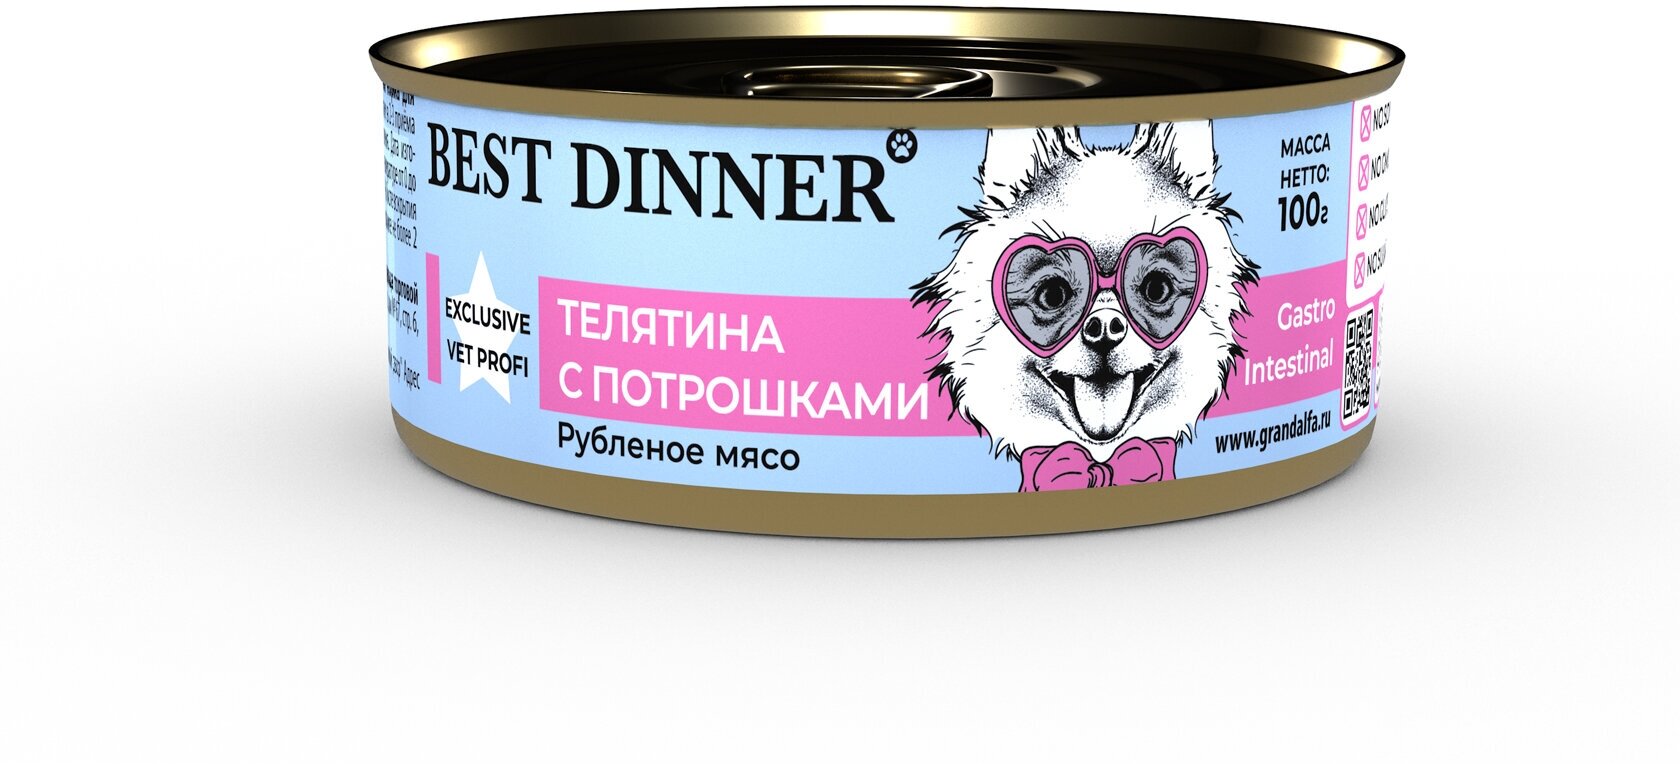 Best Dinner Vet Profi Gastro Intestinal Exclusive 100г телятина с потрошками консервы для собак